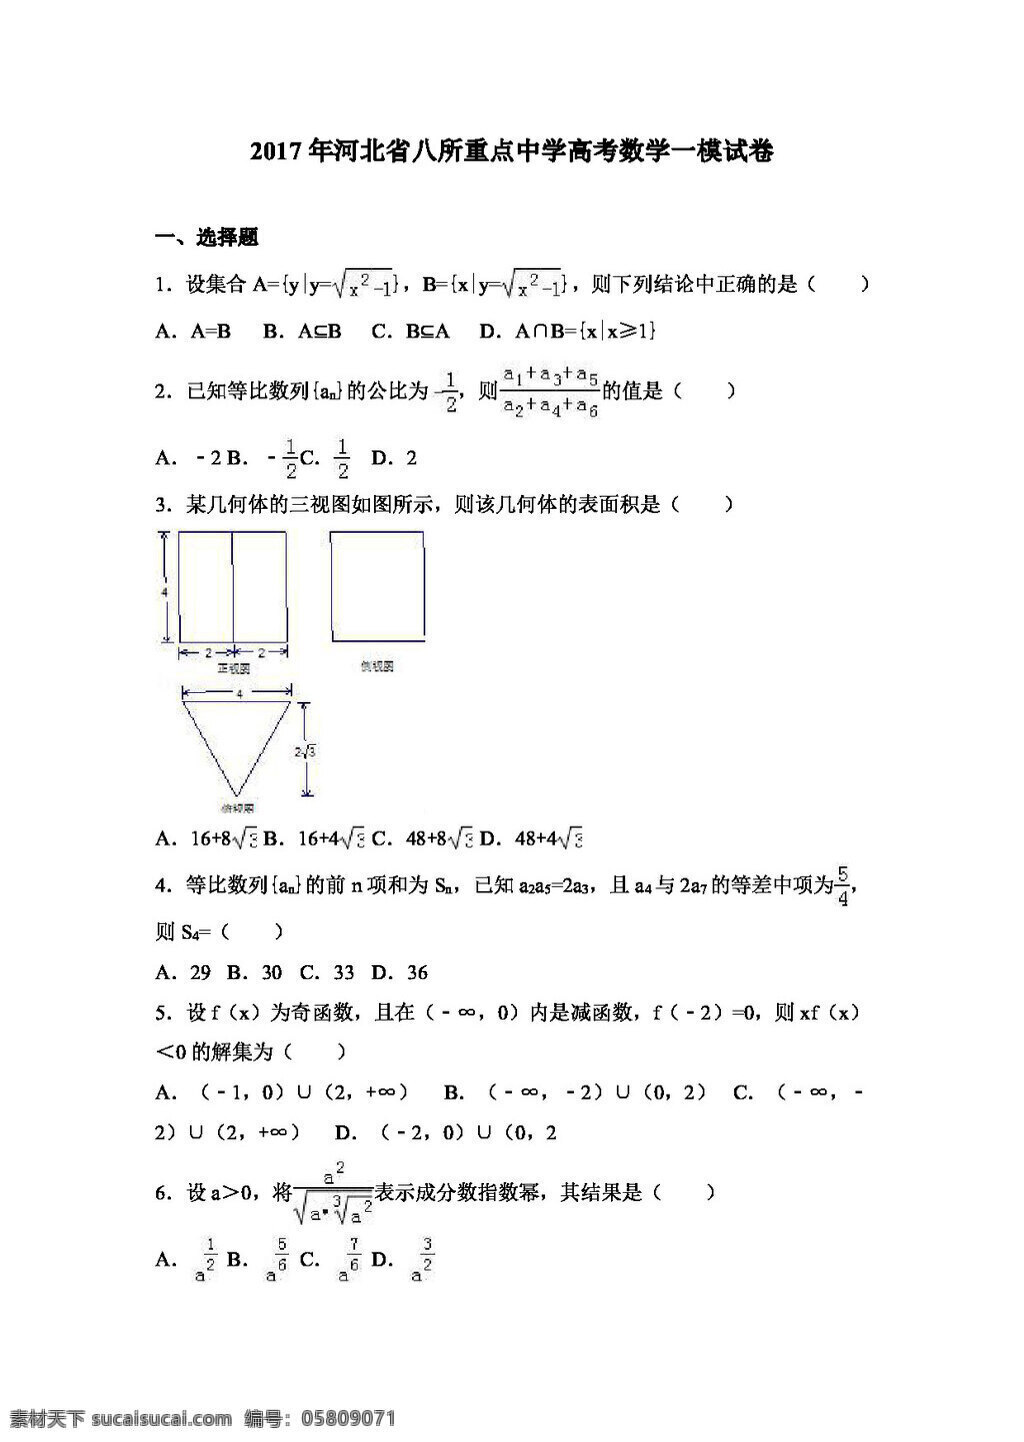 数学 人教 版 2017 年 河北省 八所 重点中学 高考 模 试卷 高考专区 人教版